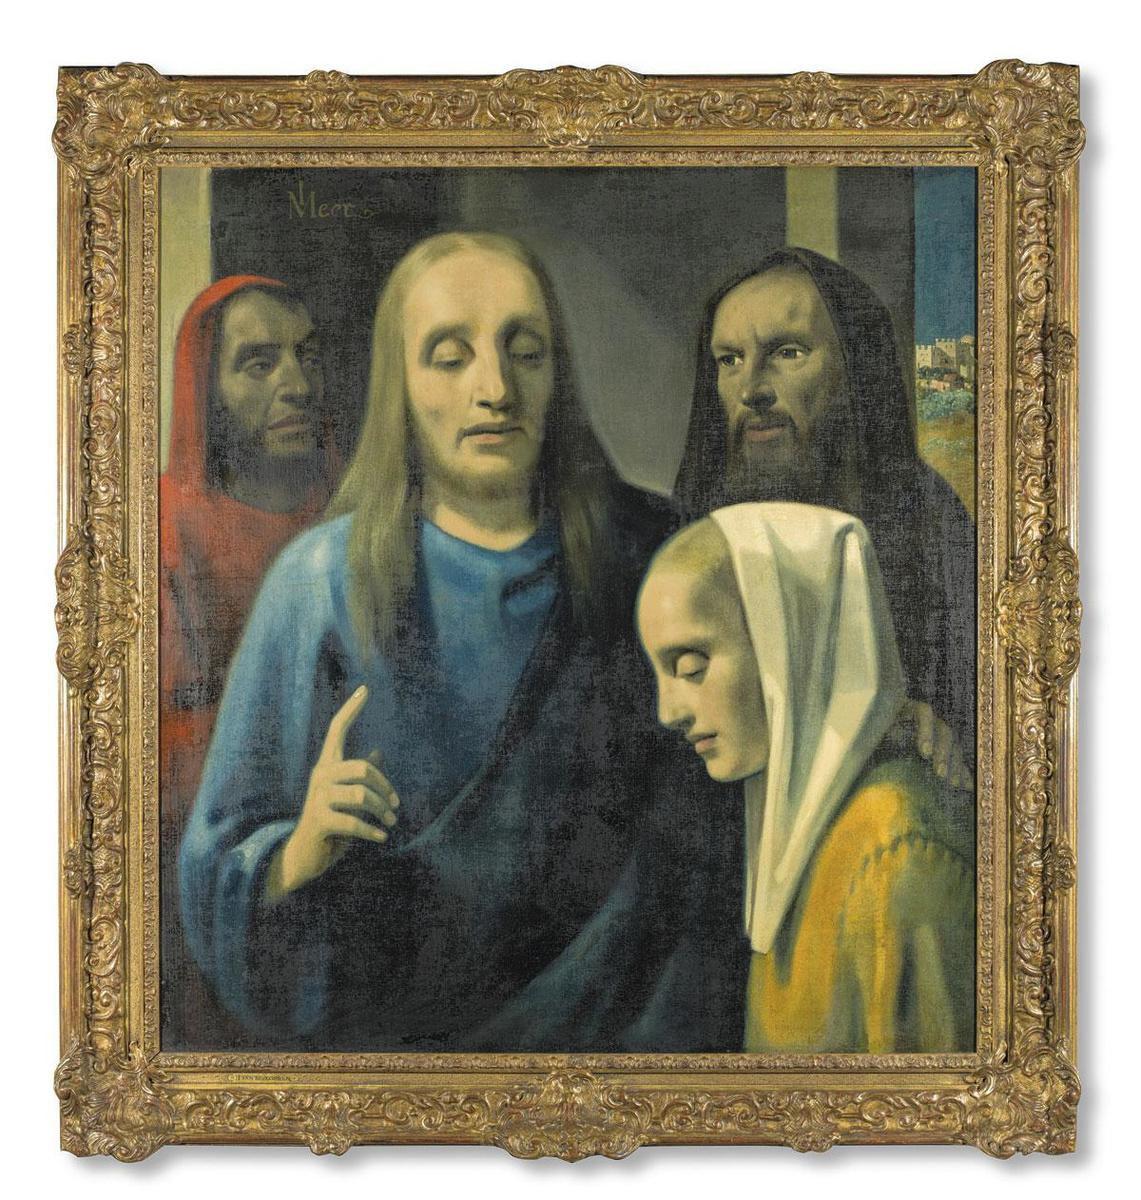 Le Christ et la femme adultère (1942). Avec ce tableau, qu'il a fait passer pour un Vermeer, le faussaire Han van Meegeren a réussi à duper Hermann Göring.